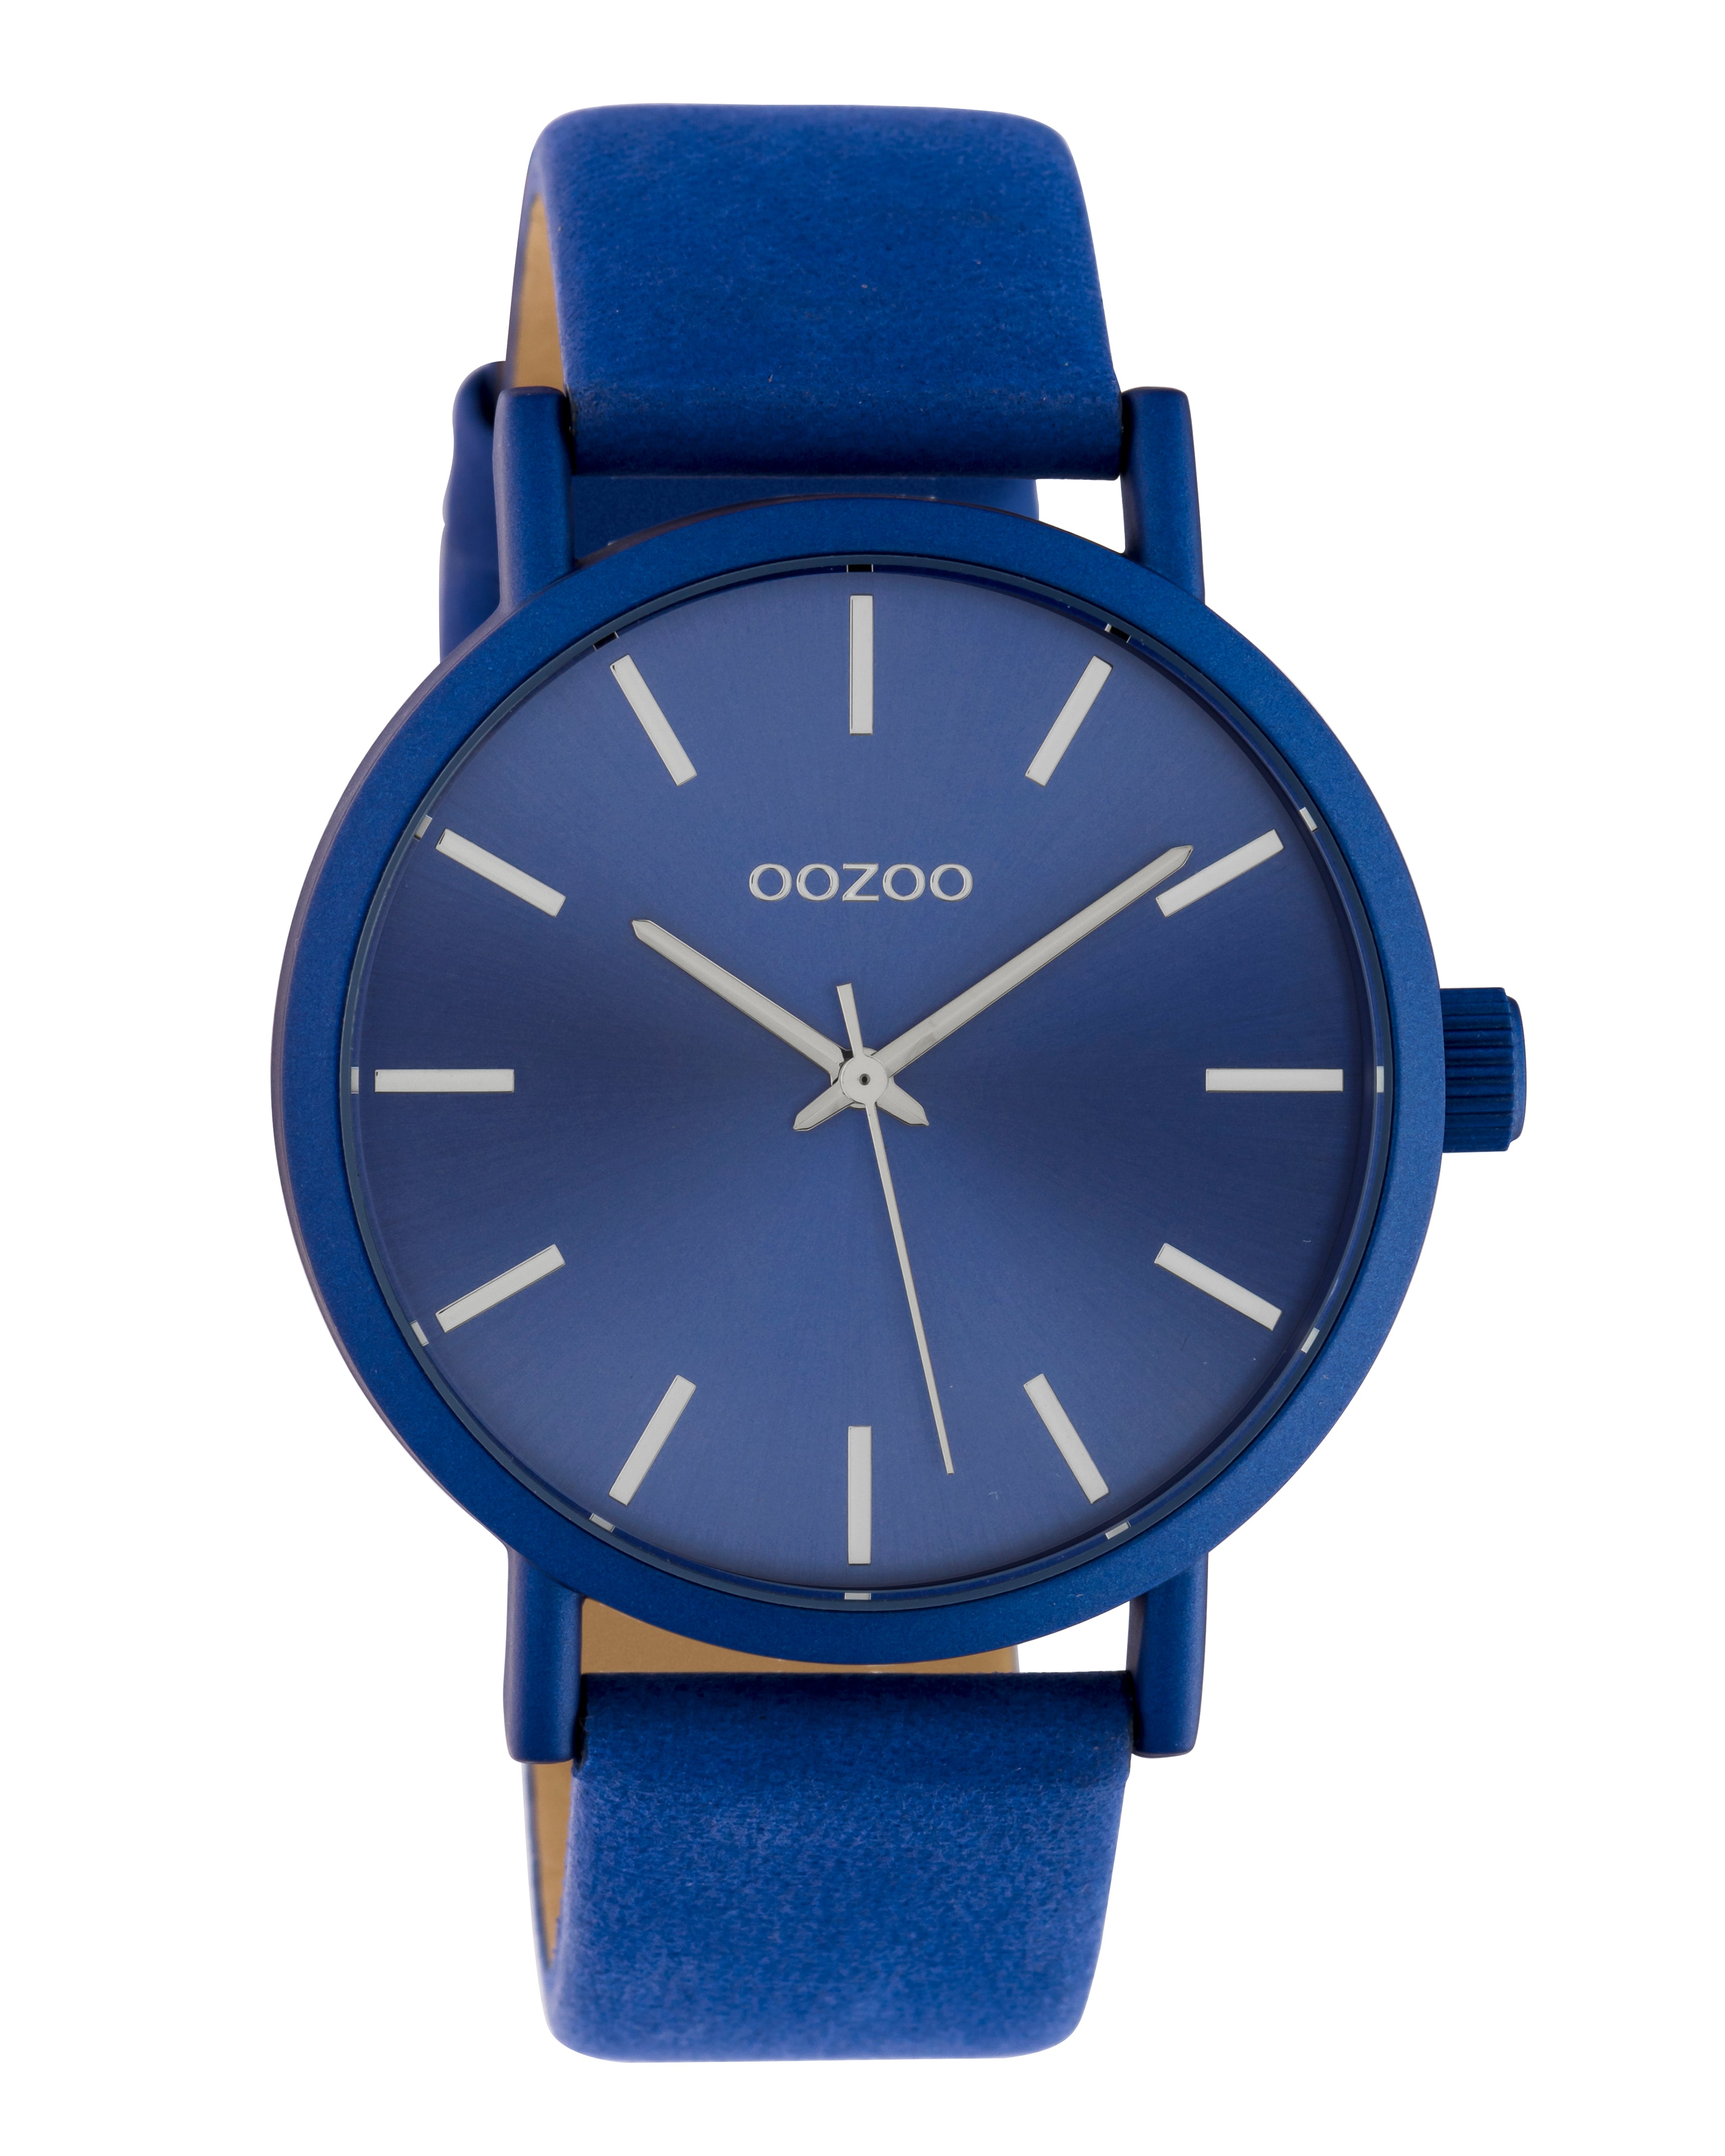 OOZOO 42mm Galaxy Blue Leather Watch